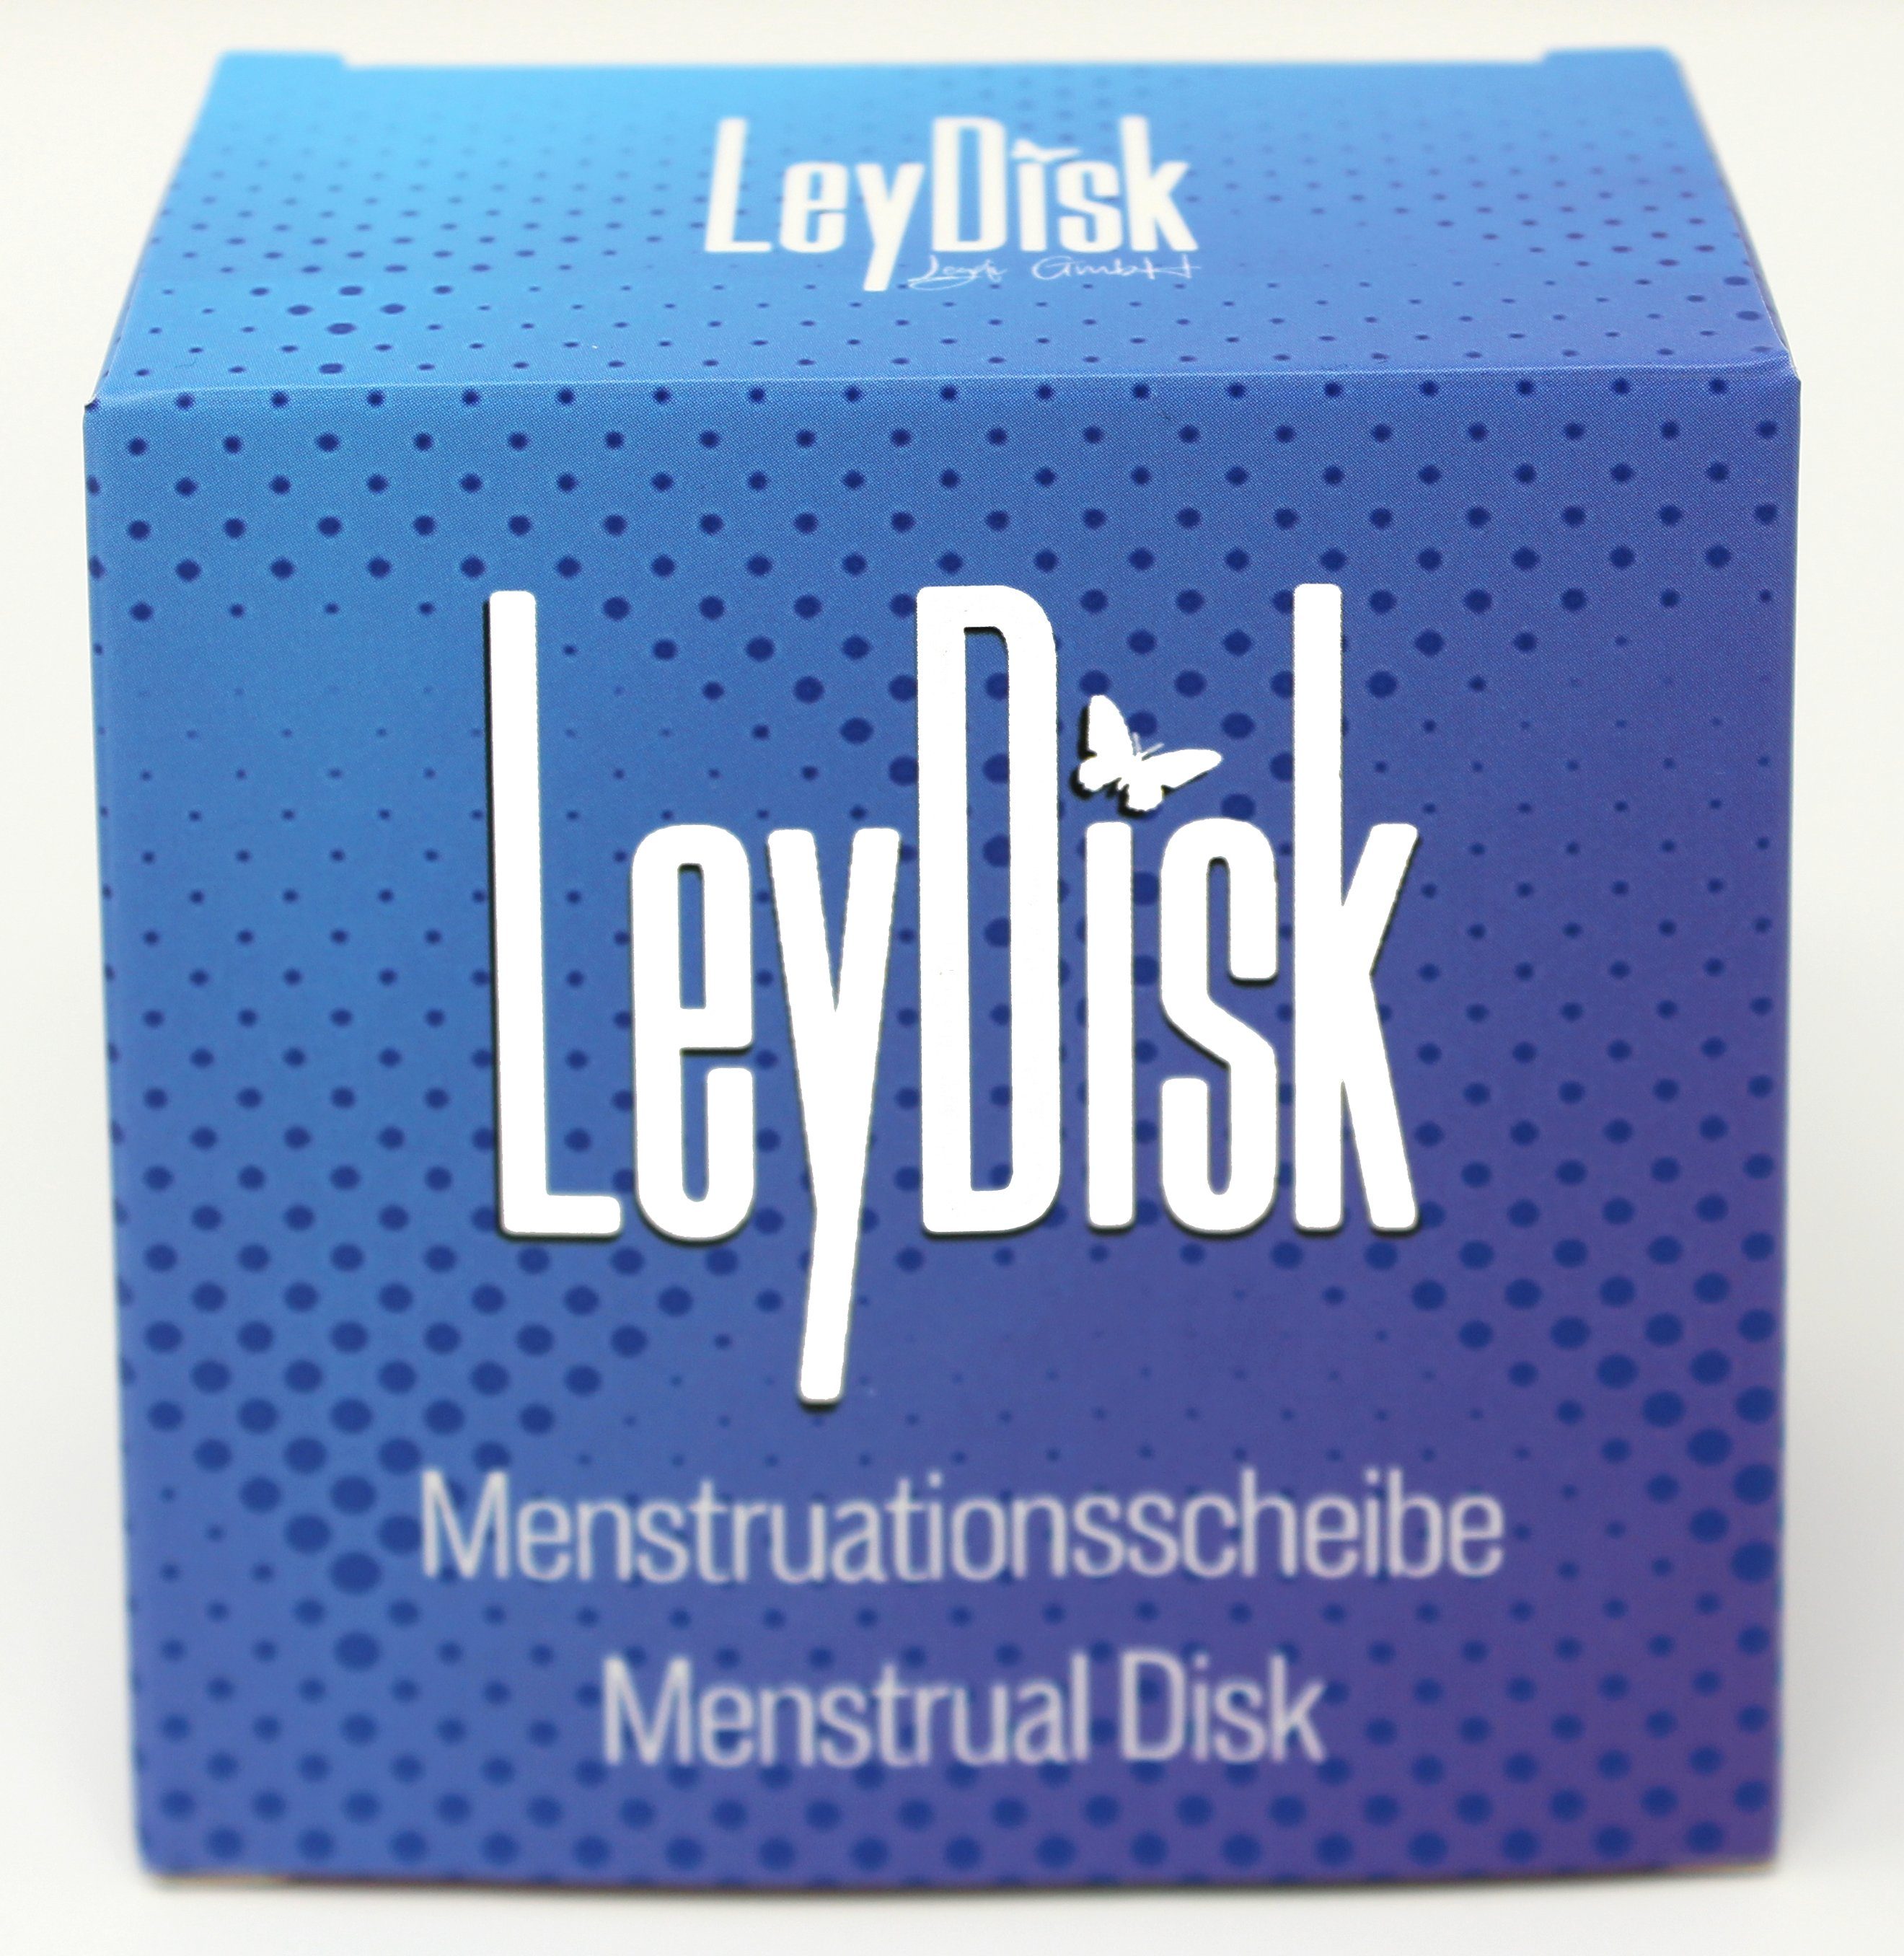 Leydi Intimpflege LeyDisk Menstruationsdisk, 4-tlg., Einfach anzuwenden, Lila Passform Nachhaltig, Wiederverwendbar, Universelle